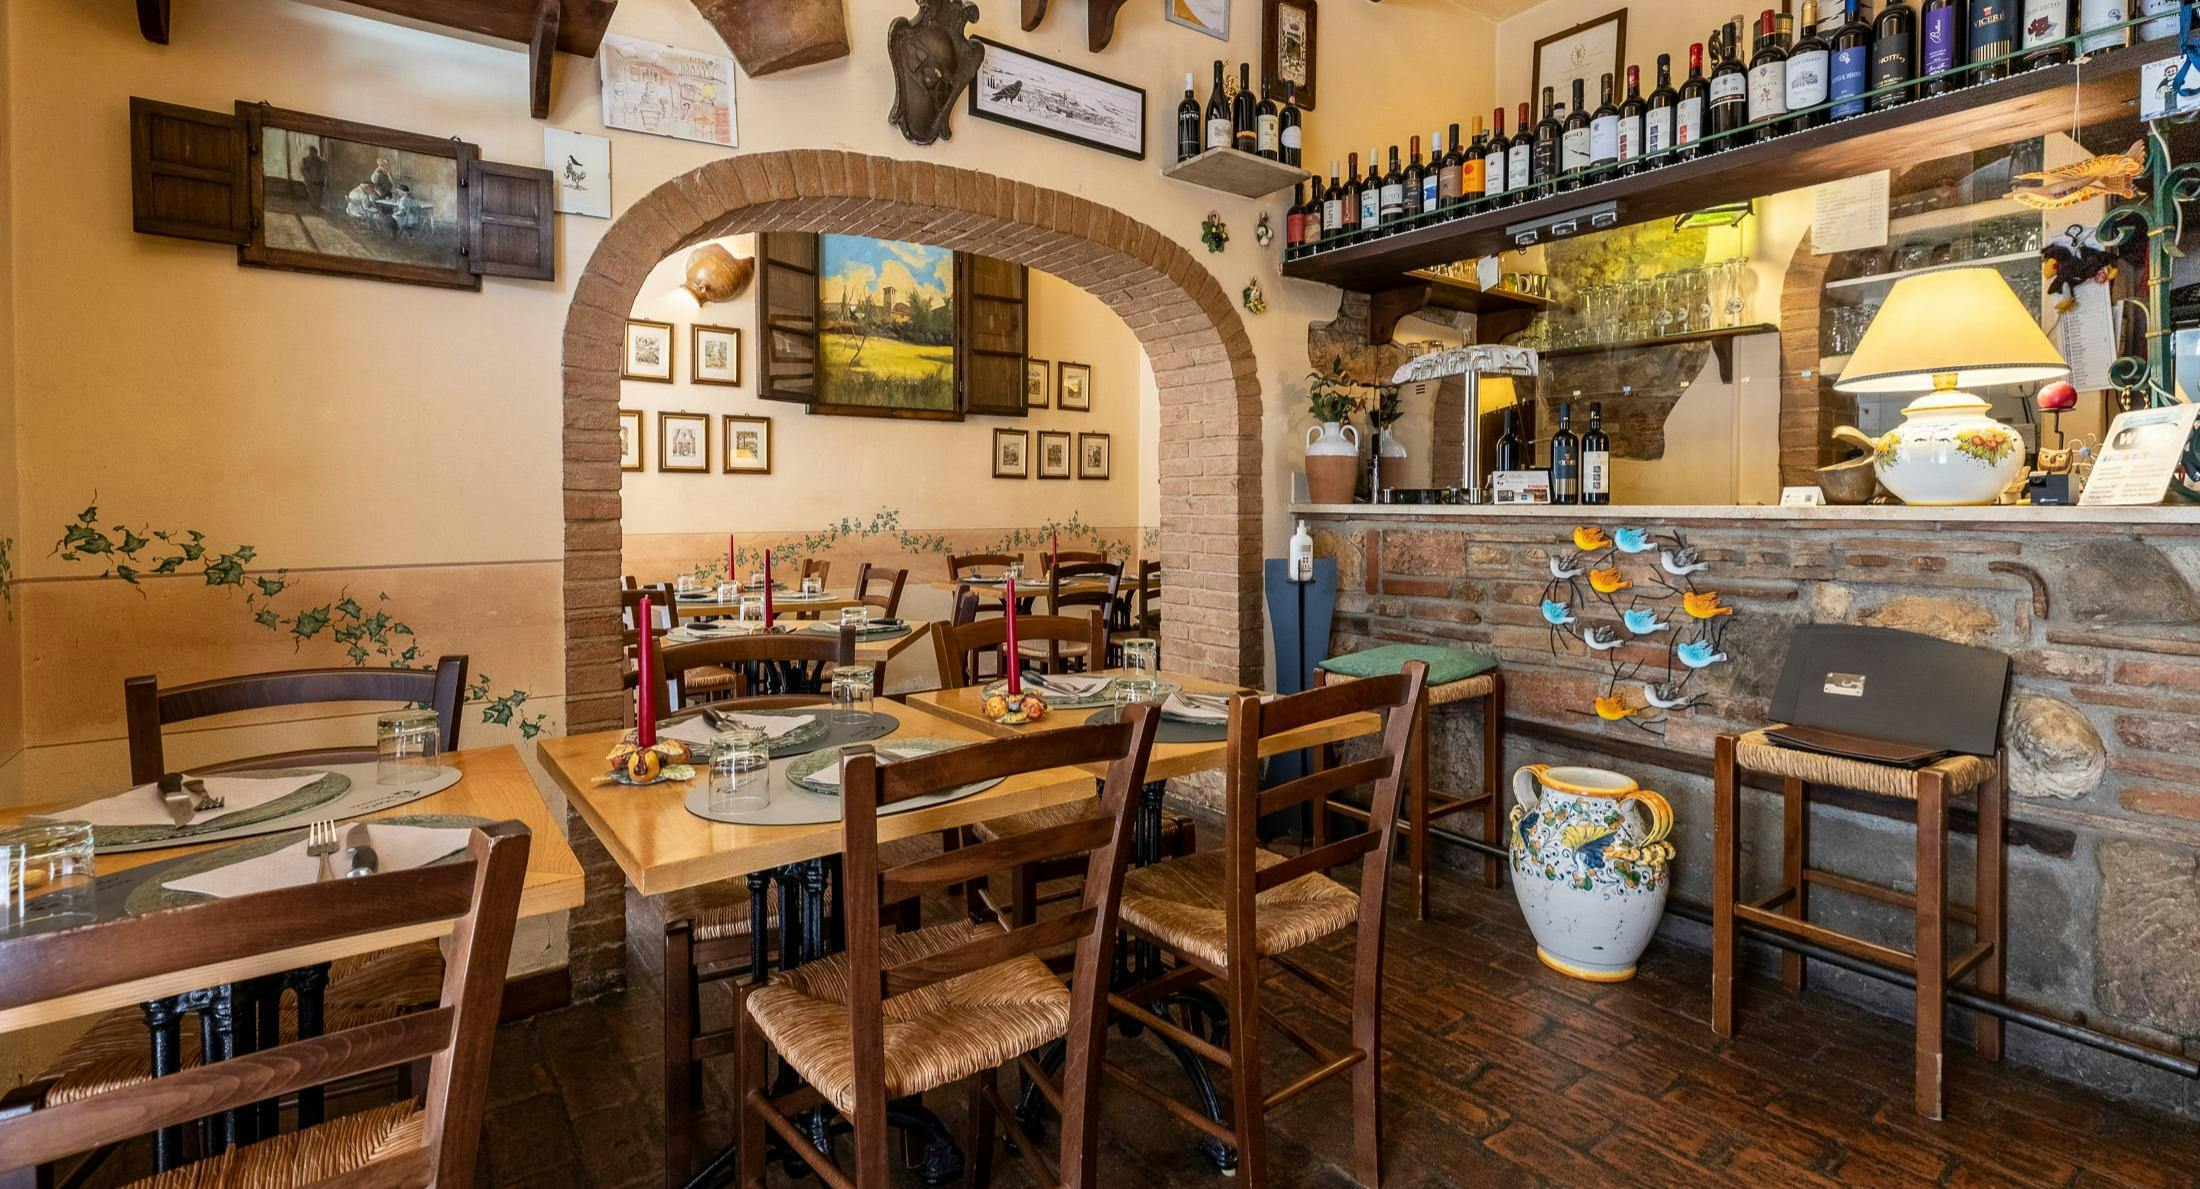 Photo of restaurant Ristorante Il Merlo Casciana Terme in Casciana Terme, Pisa